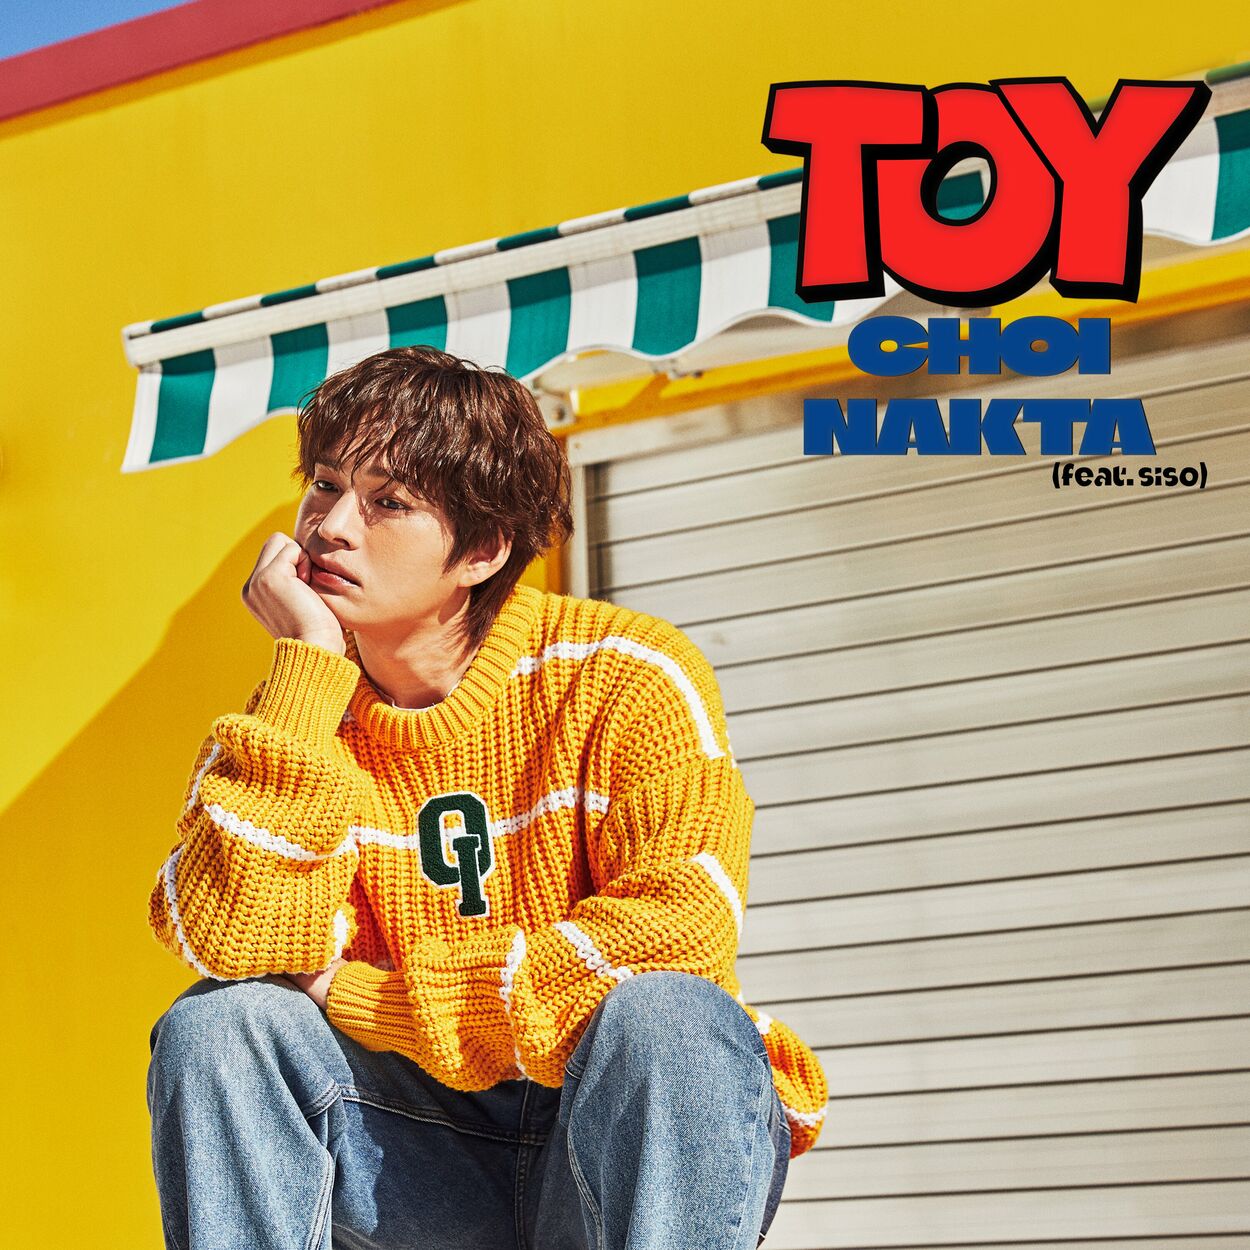 Choi Nakta – TOY – Single